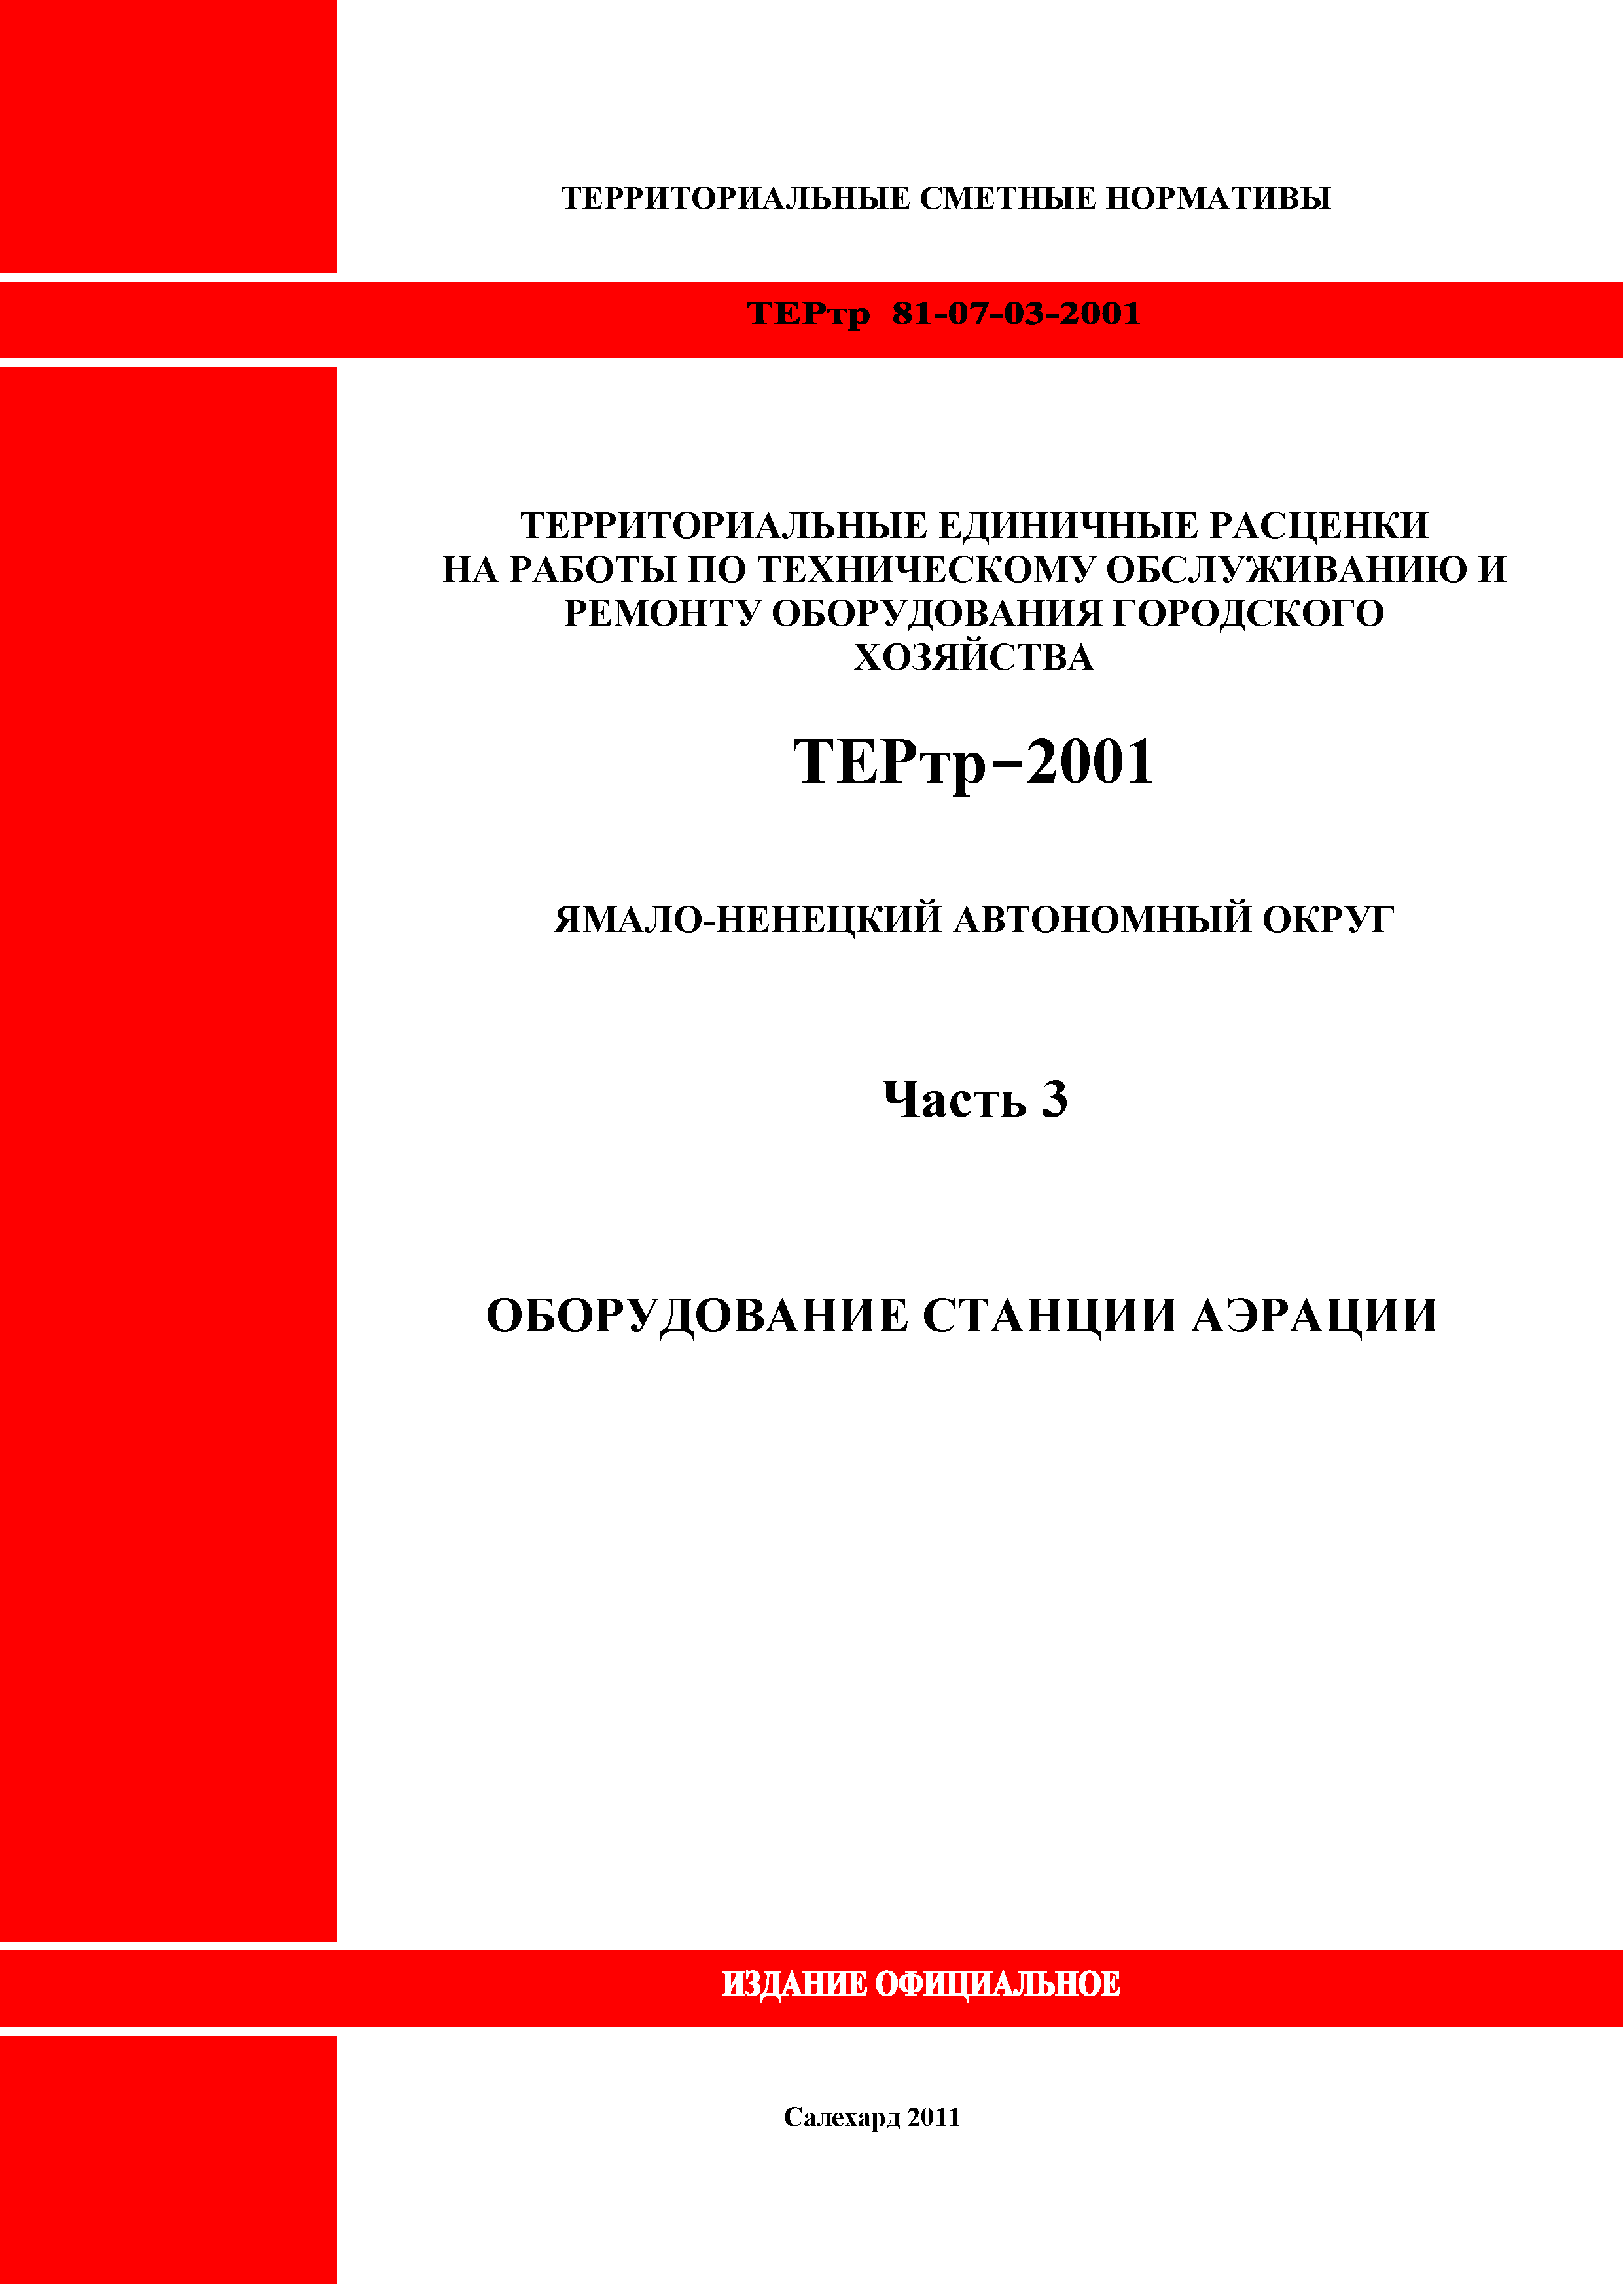 ТЕРтр Ямало-Ненецкий автономный округ 03-2001